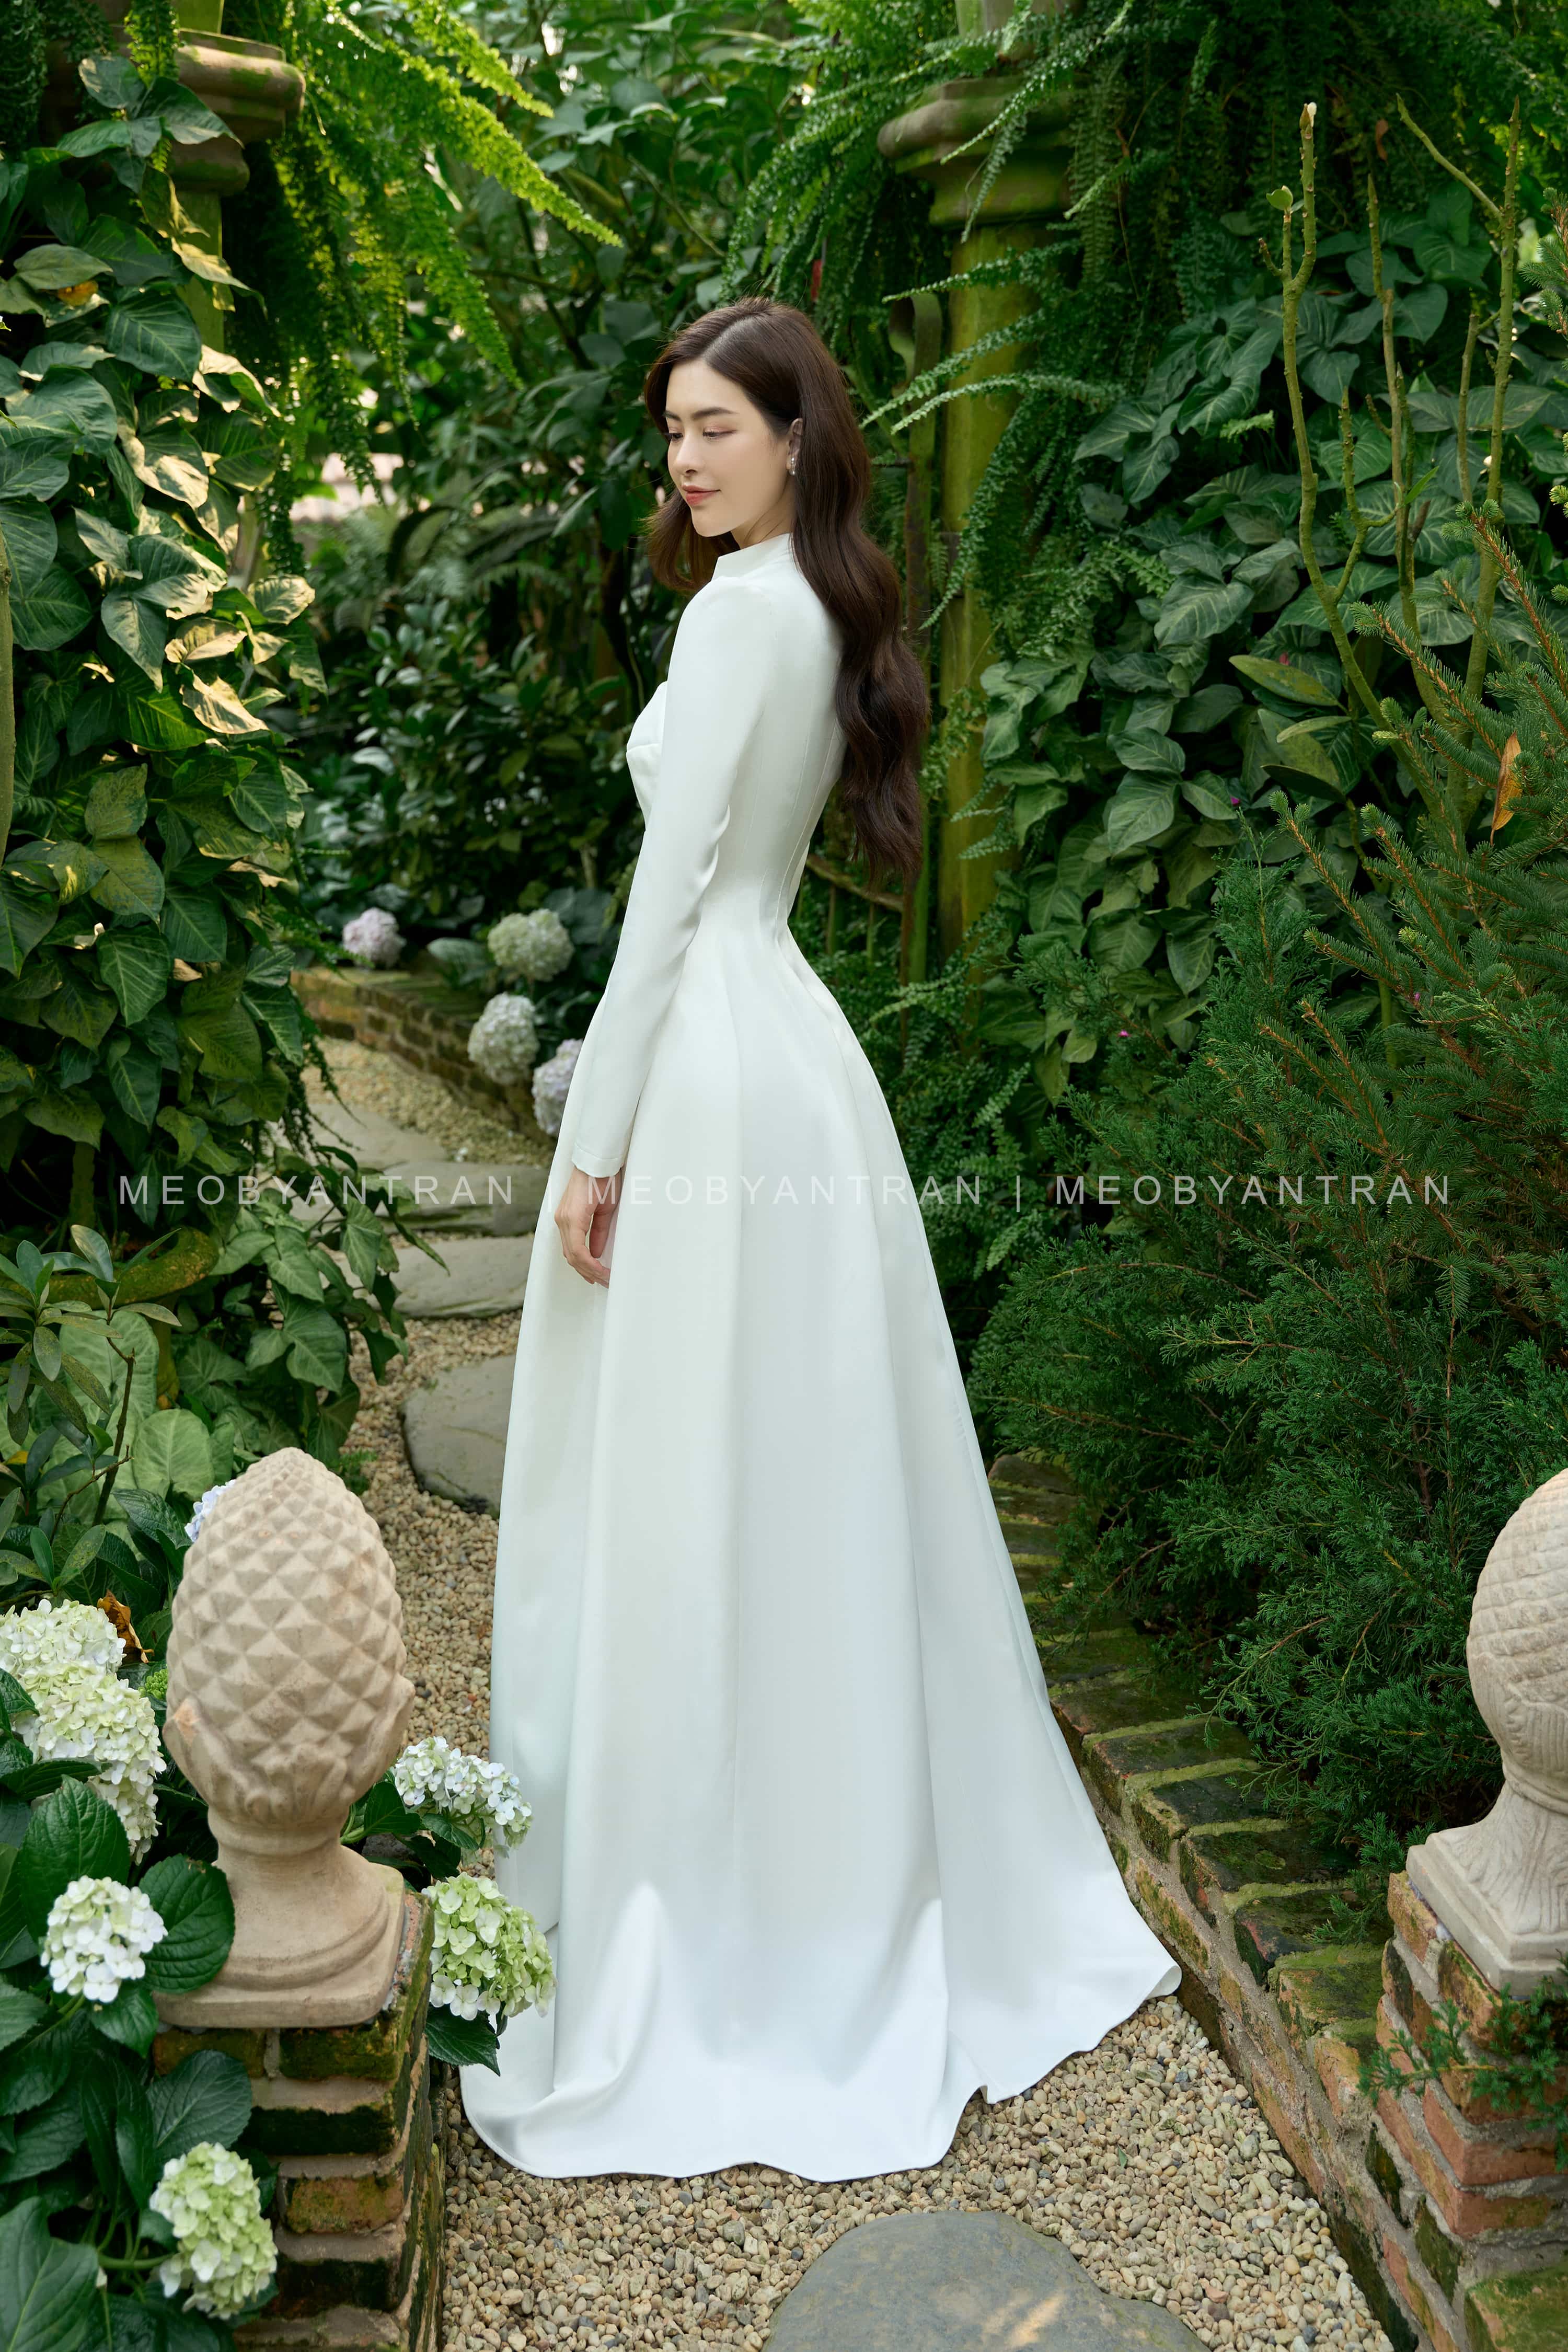 Top 10 mẫu váy cưới phồng tuyệt đẹp và ấn tượng nhất năm 2019